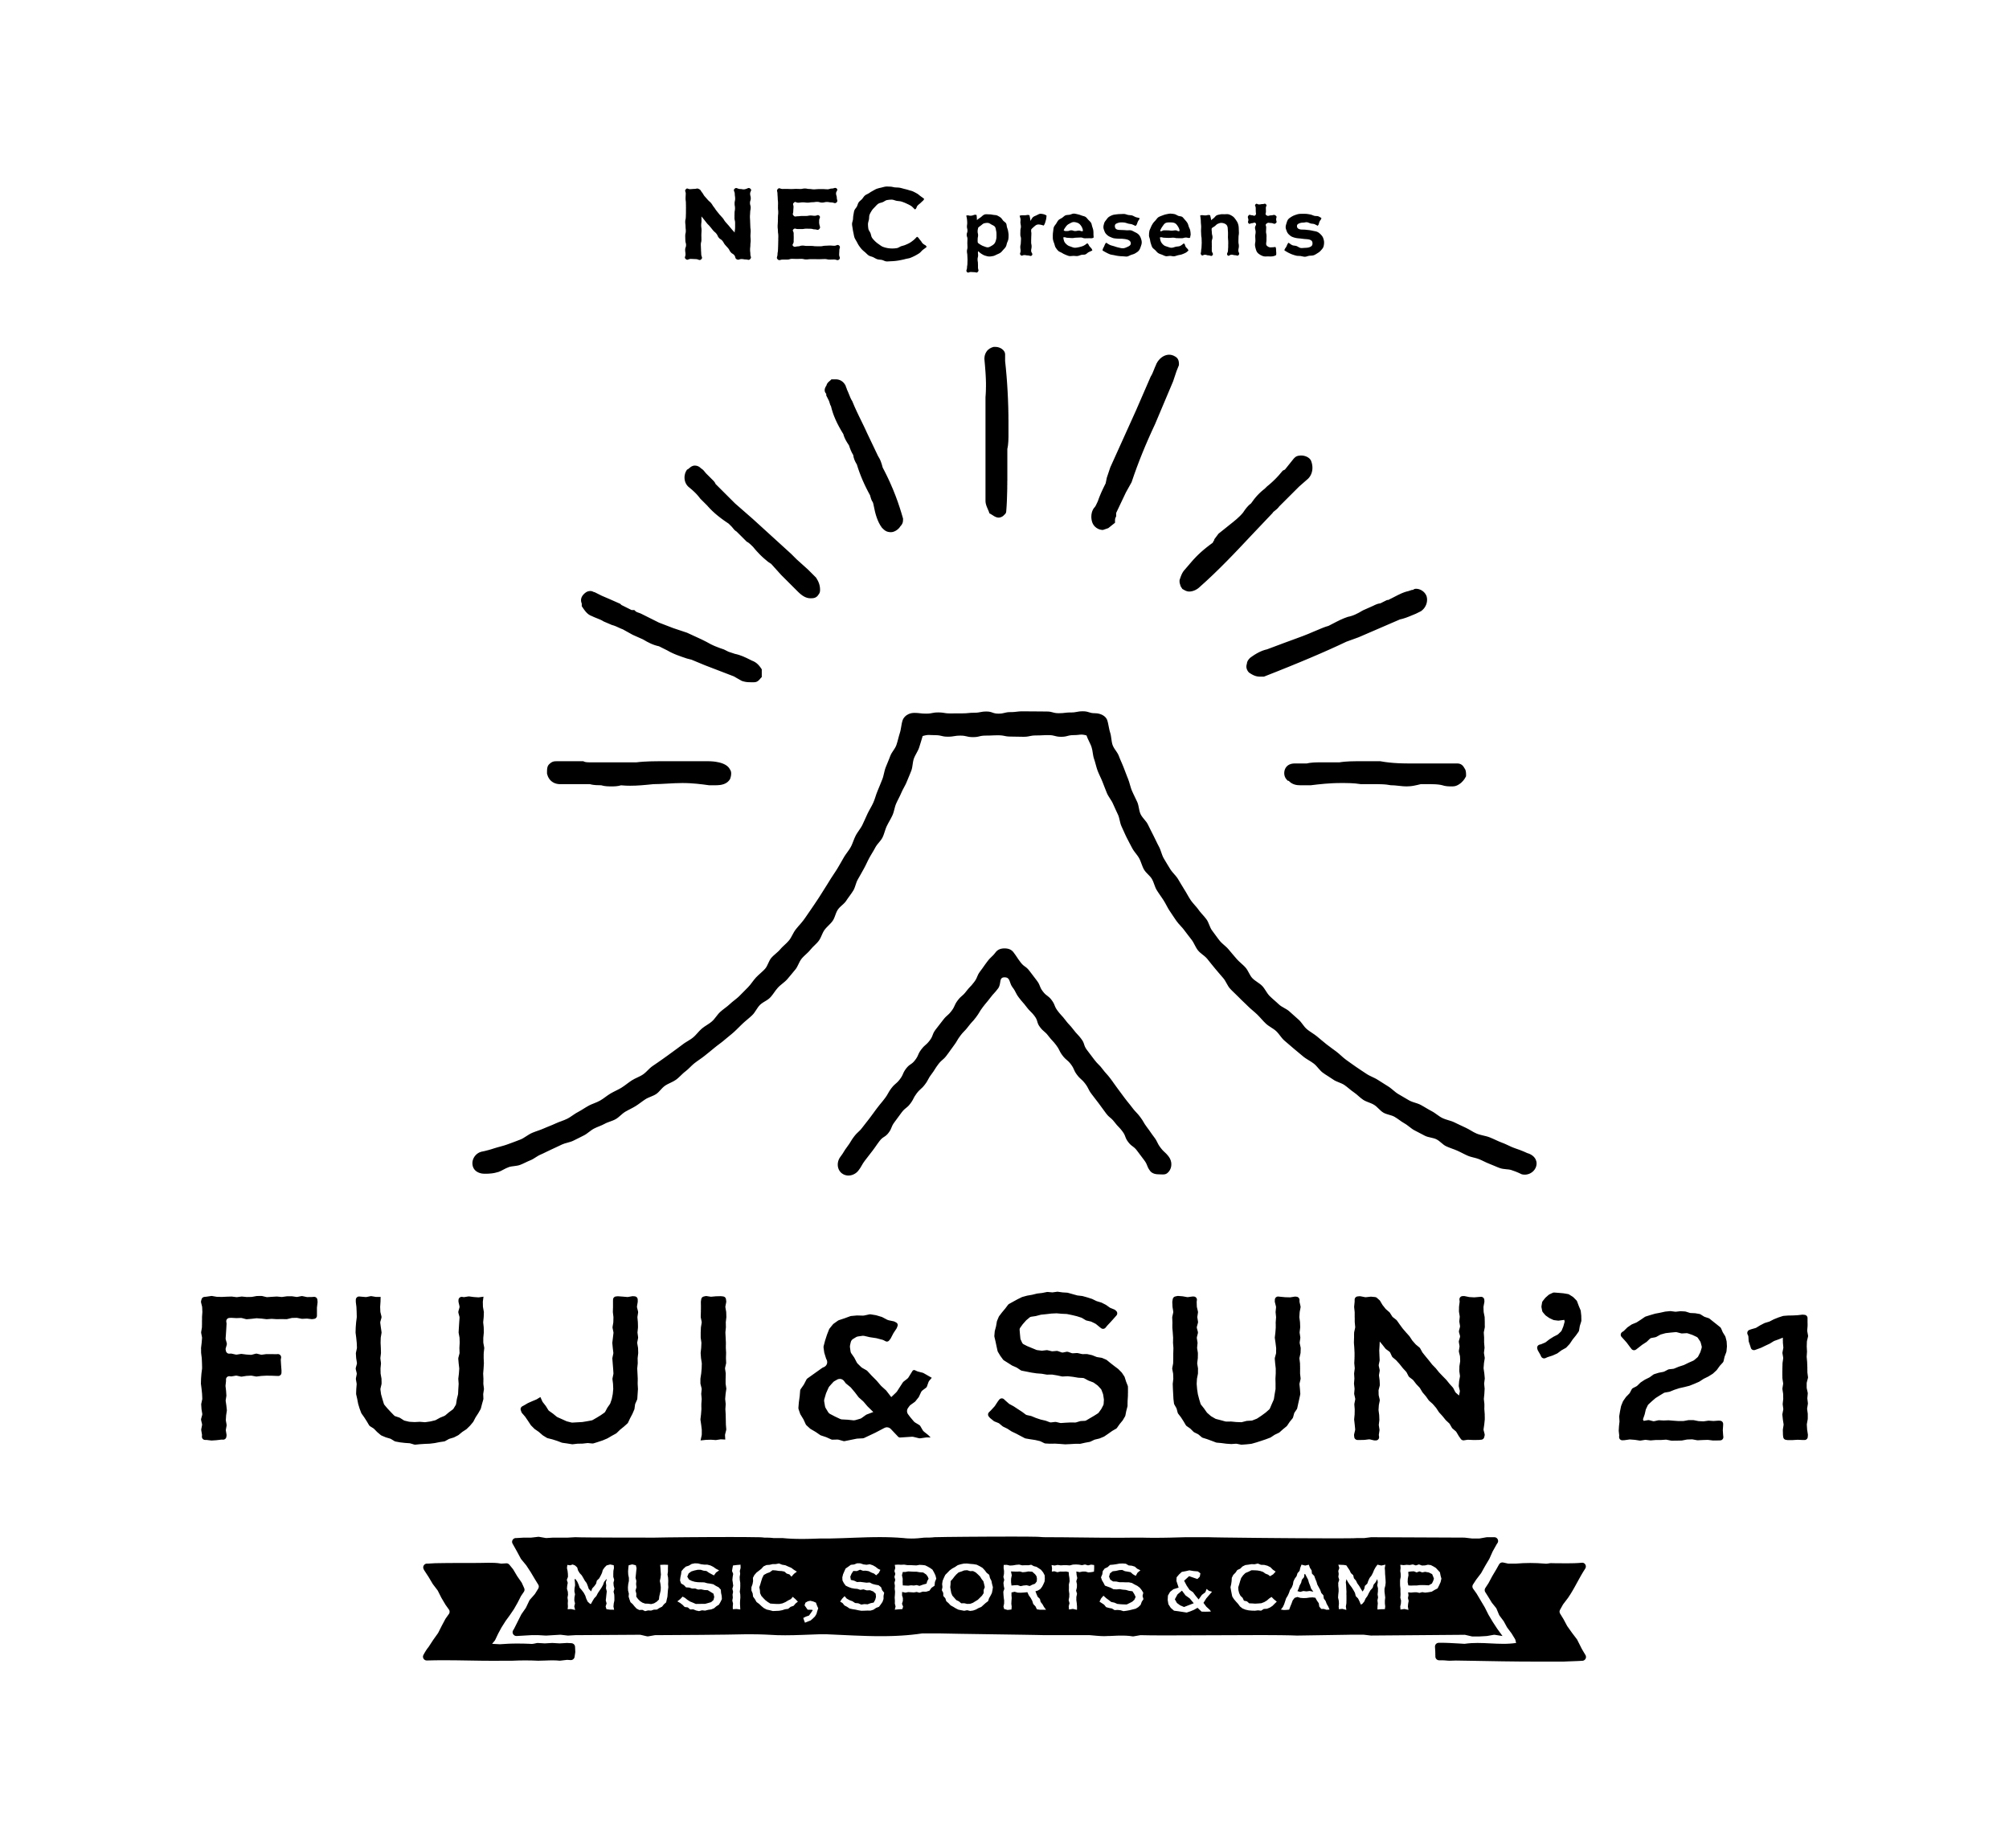 FUJI & SUN21